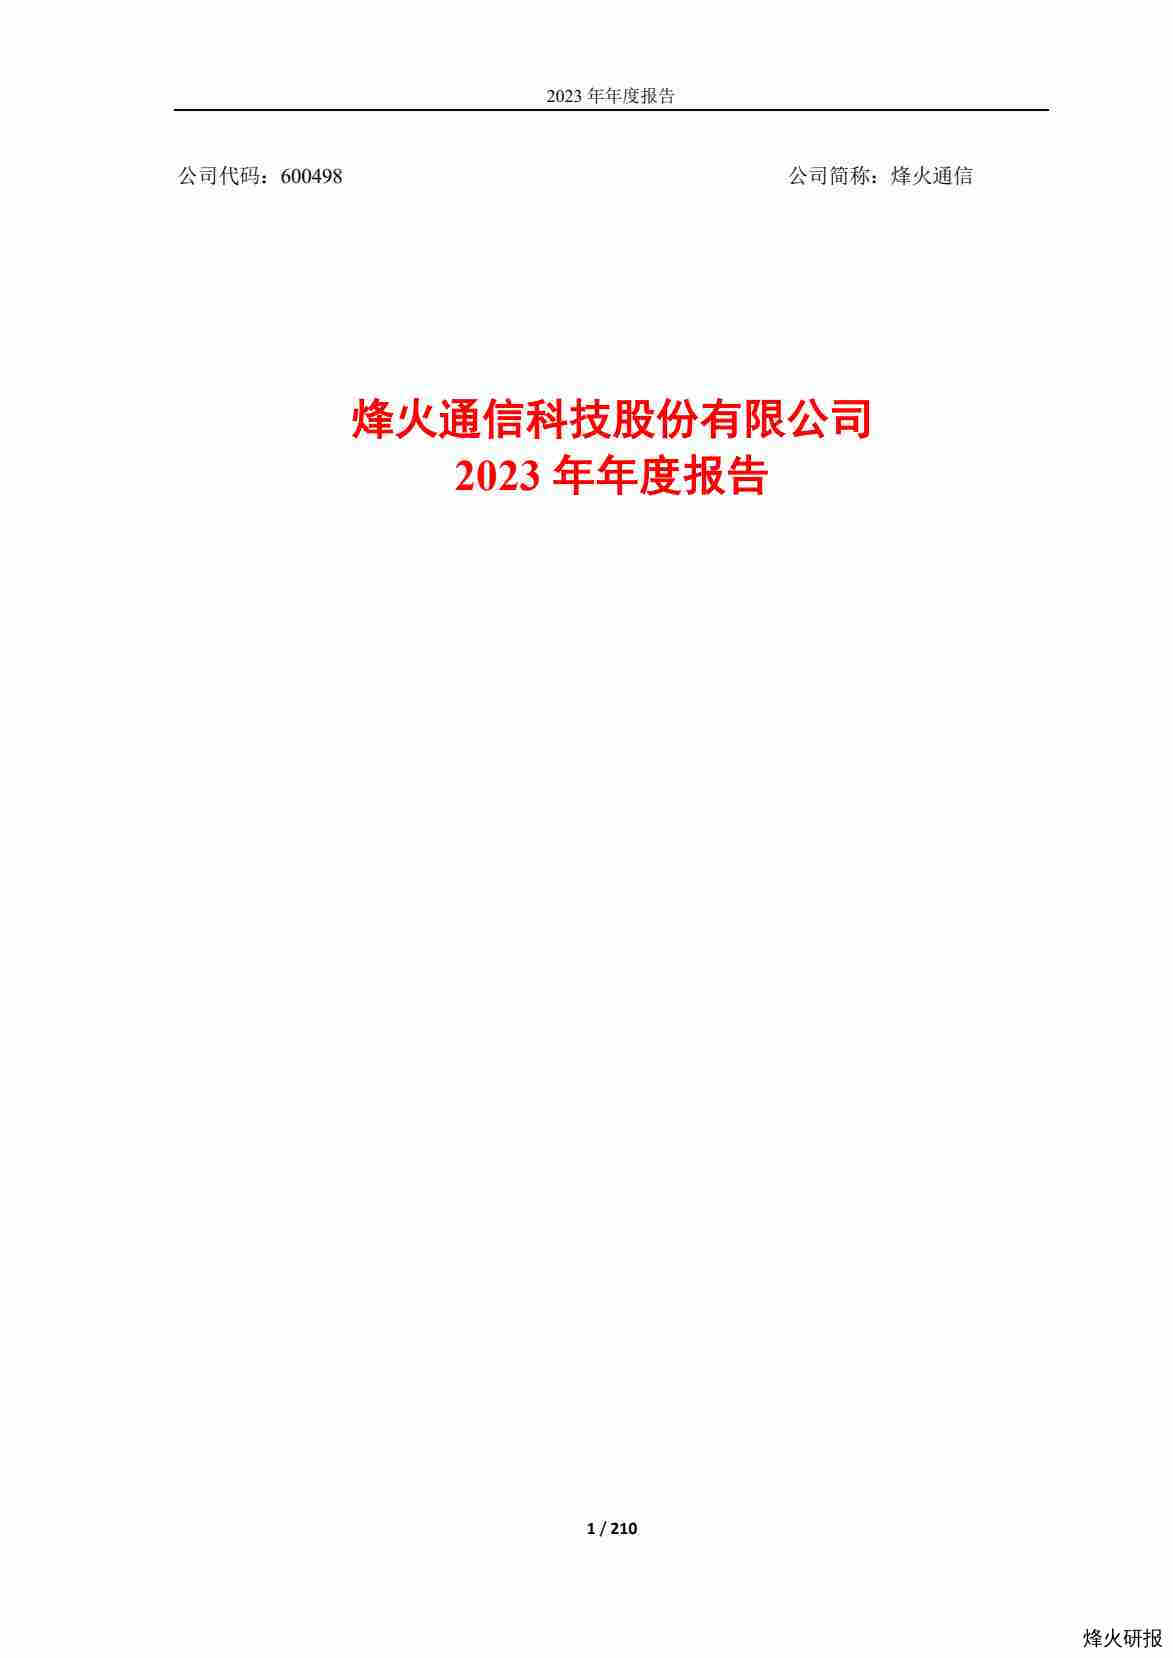 【财报】烽火通信：烽火通信科技股份有限公司2023年年度报告.pdf-第一页